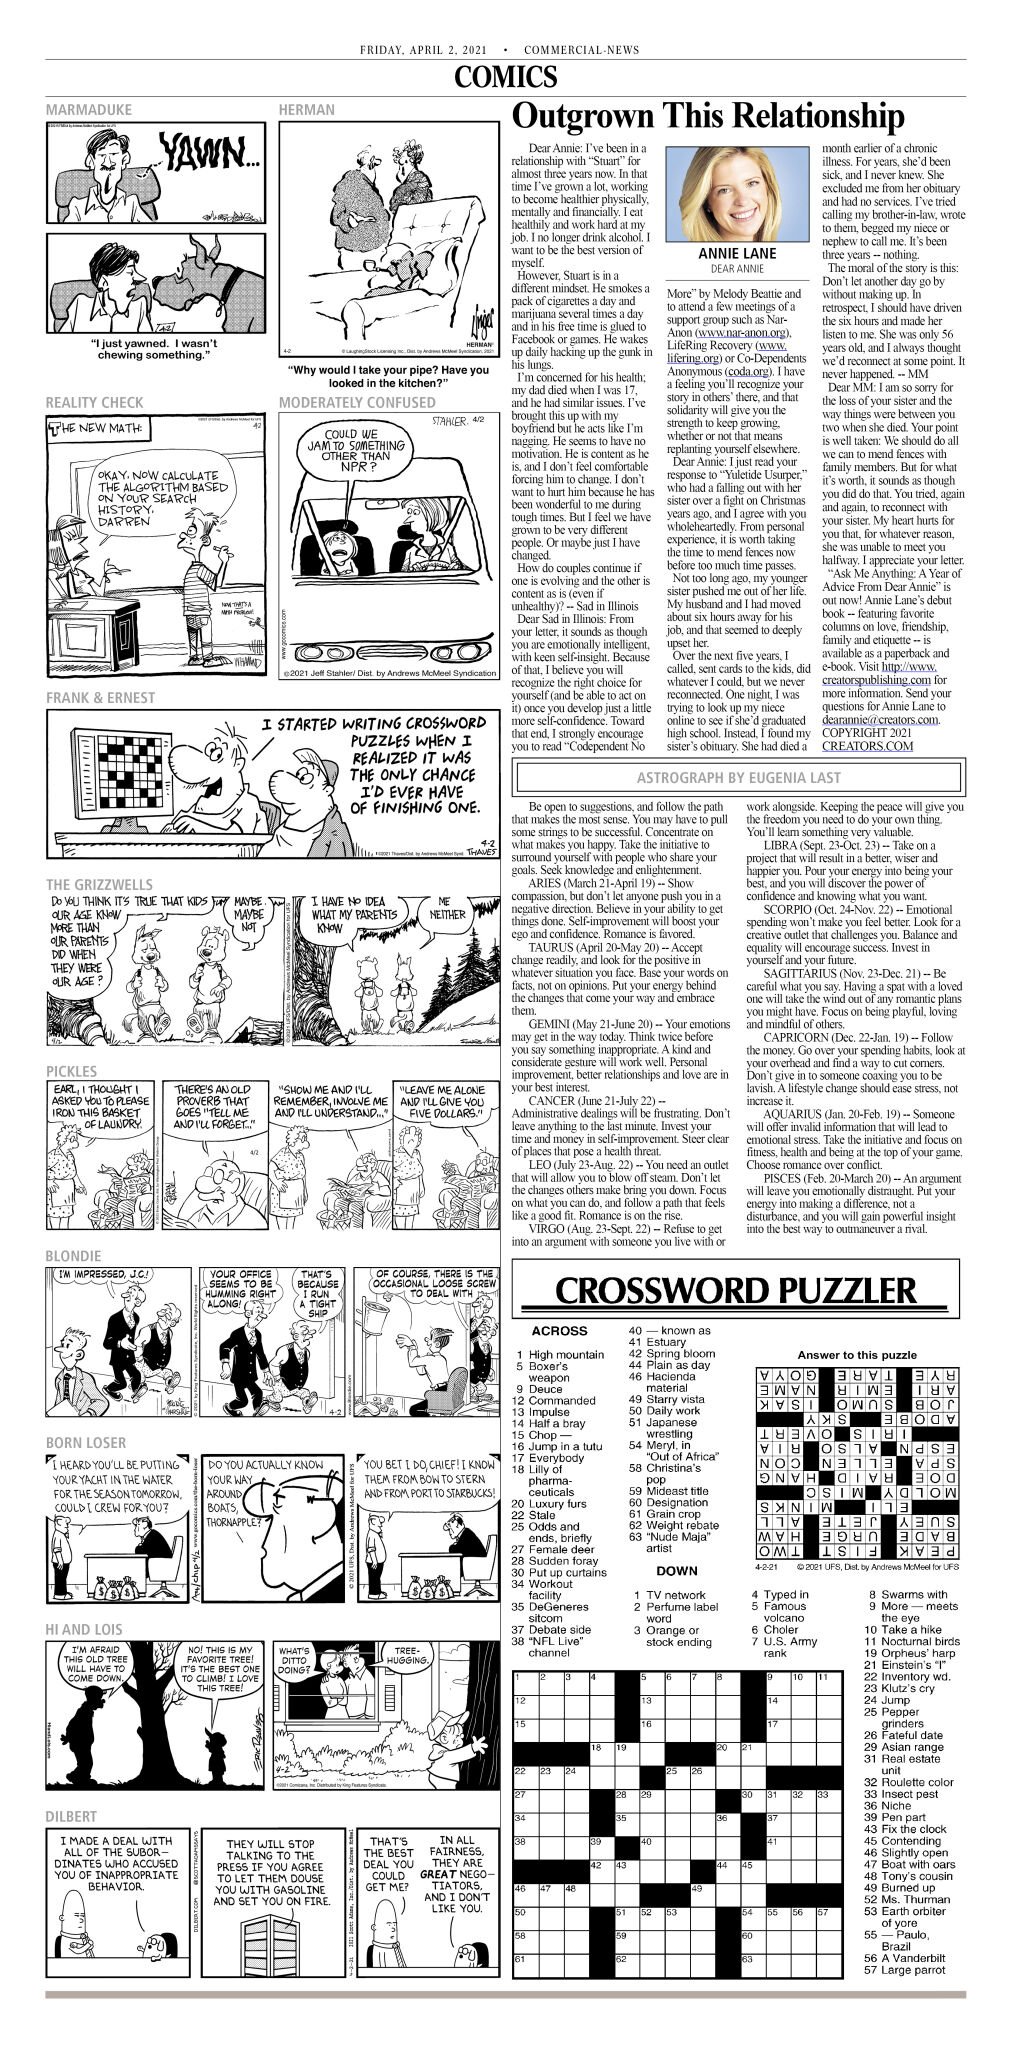 52 Debate Crossword Clue - Crossword Clue